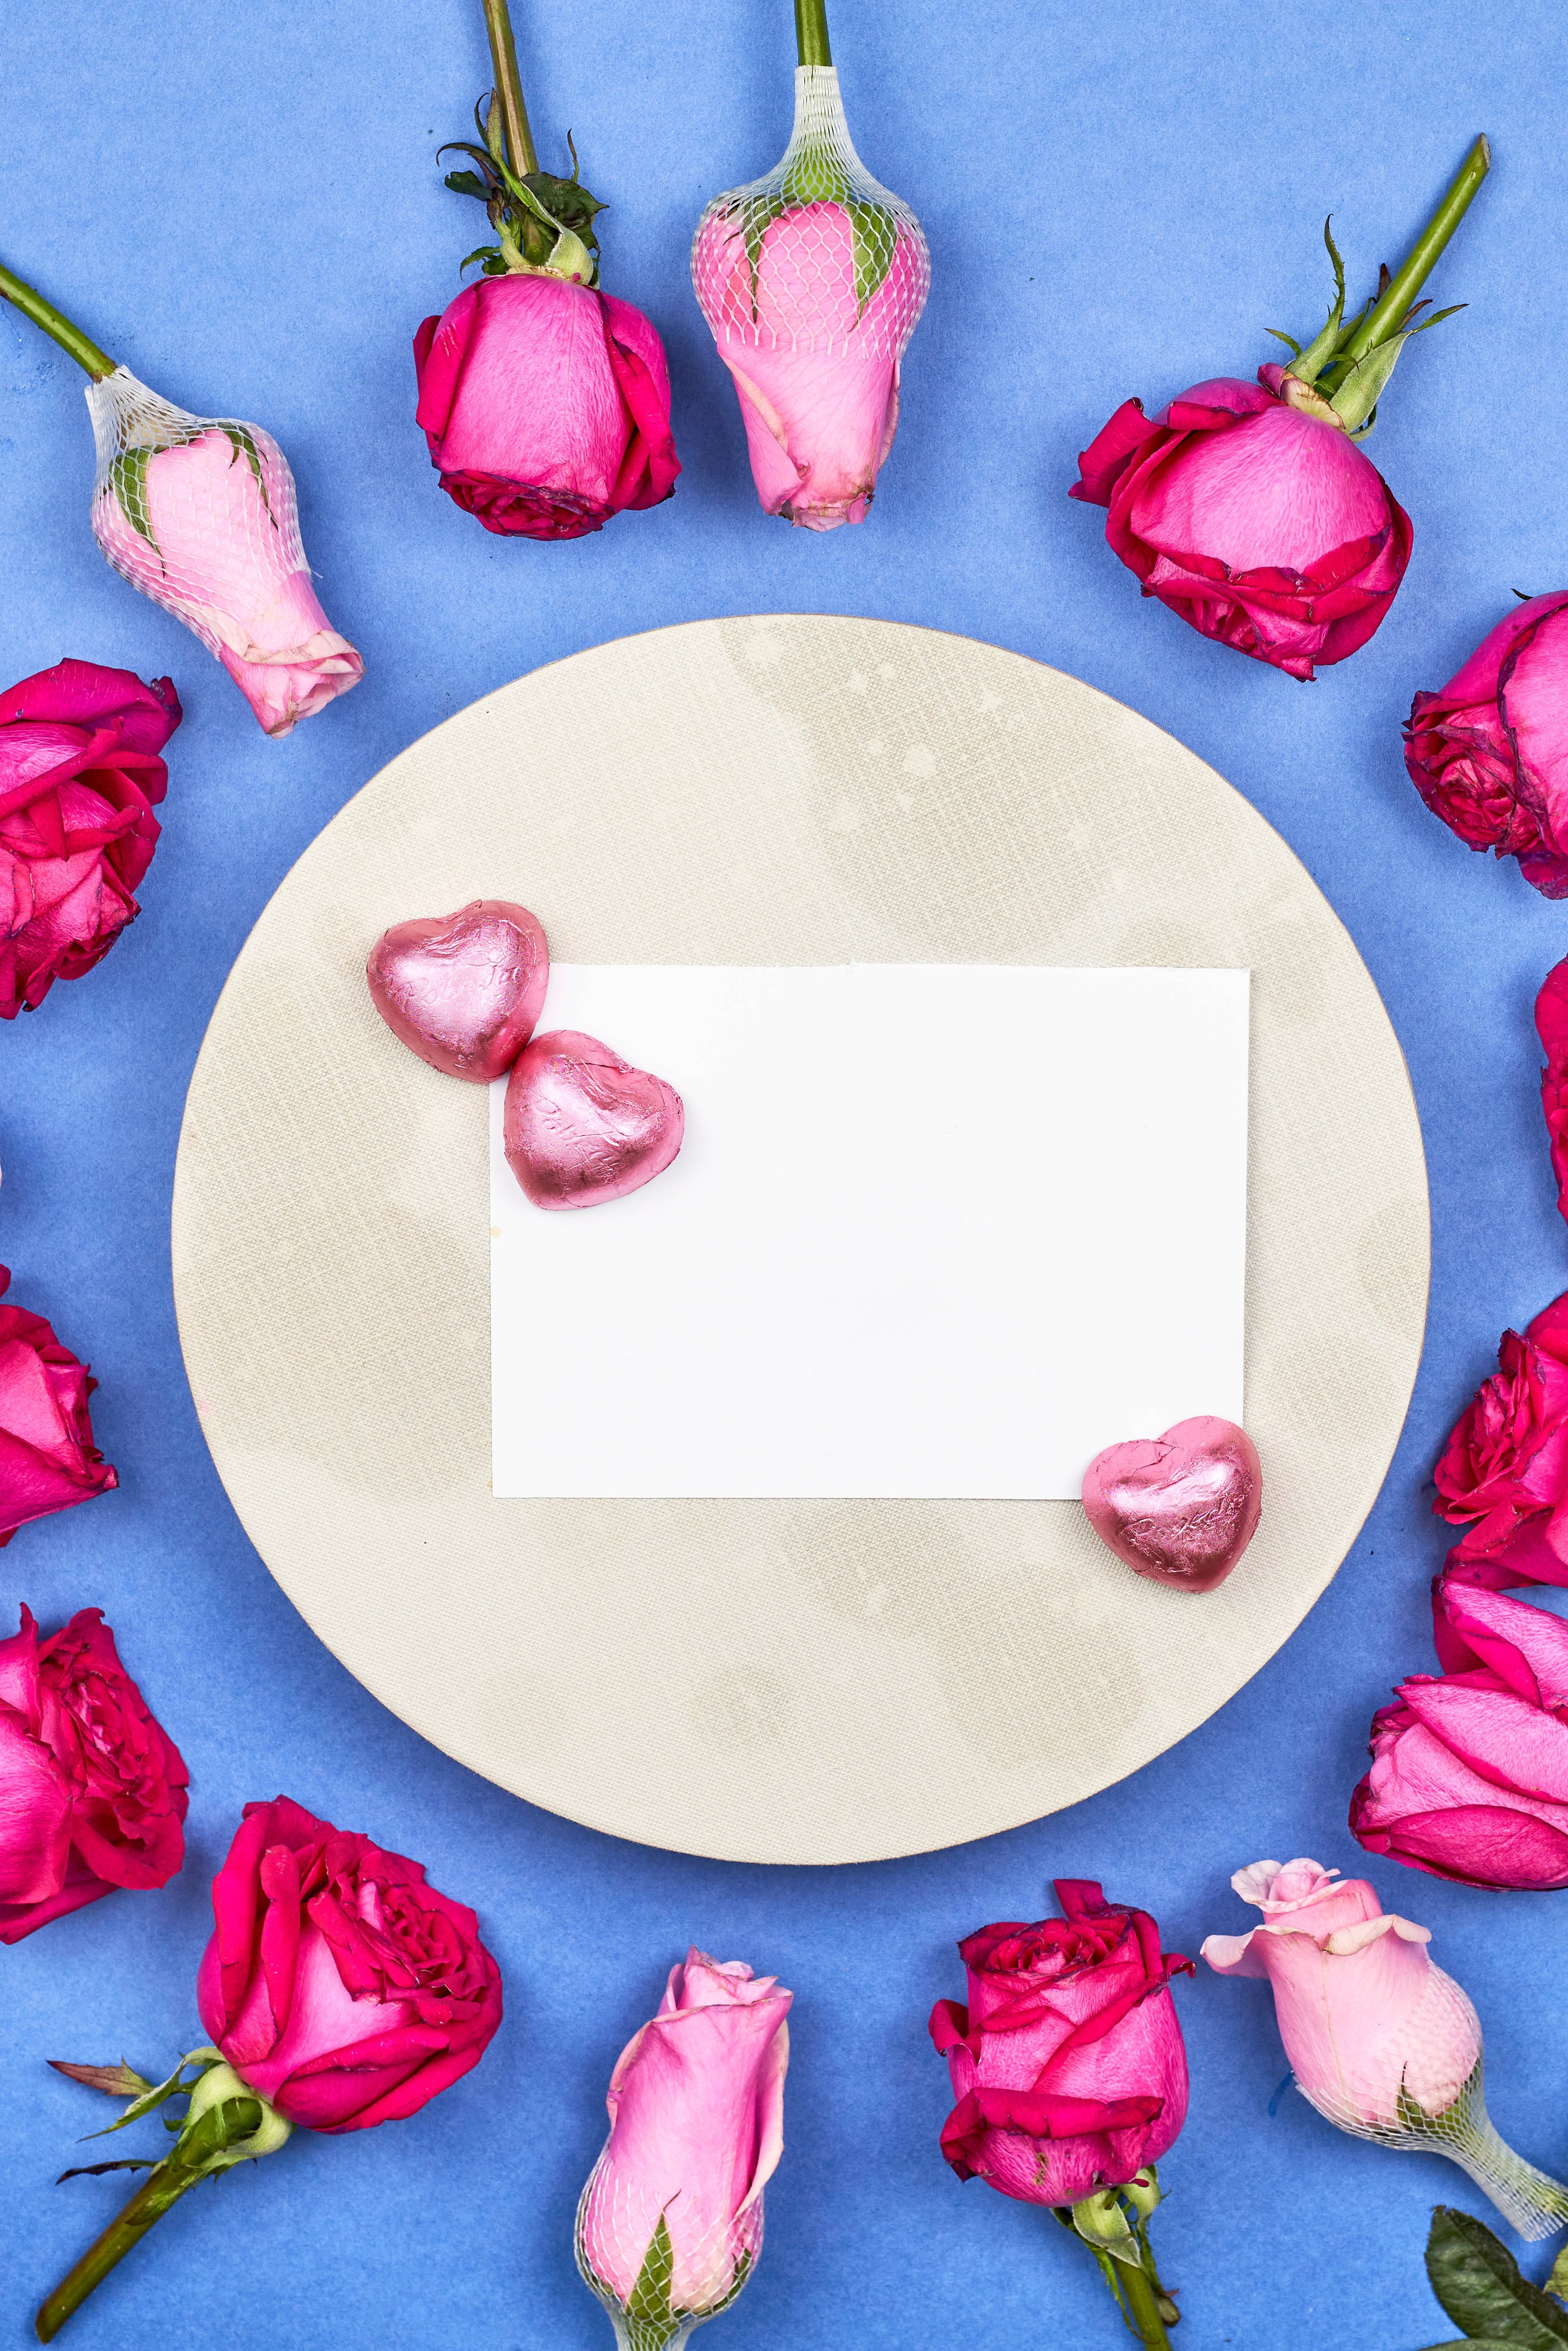 Фотография День всех влюблённых Сердце Лист бумаги Розы Конфеты Цветы Шаблон поздравительной открытки 3055x4580 для мобильного телефона День святого Валентина серце сердца сердечко роза цветок